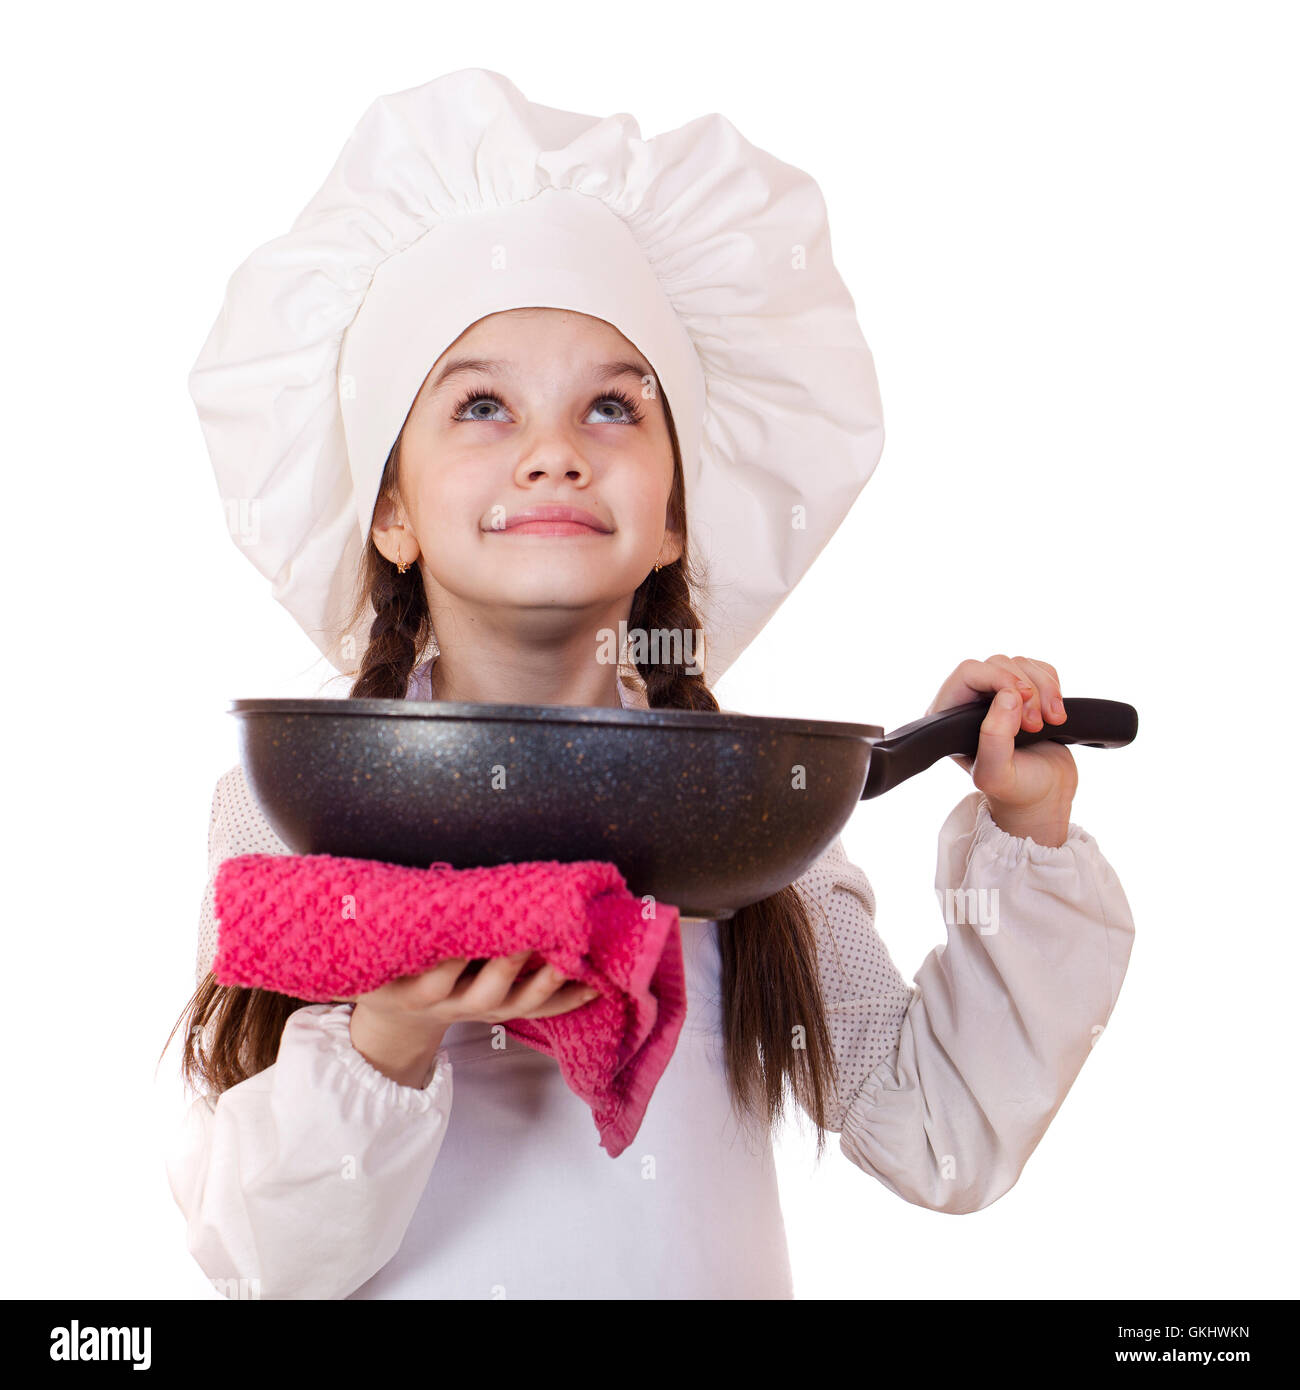 La cuisine et les gens concept - smiling little girl dans cook hat avec poêle Banque D'Images